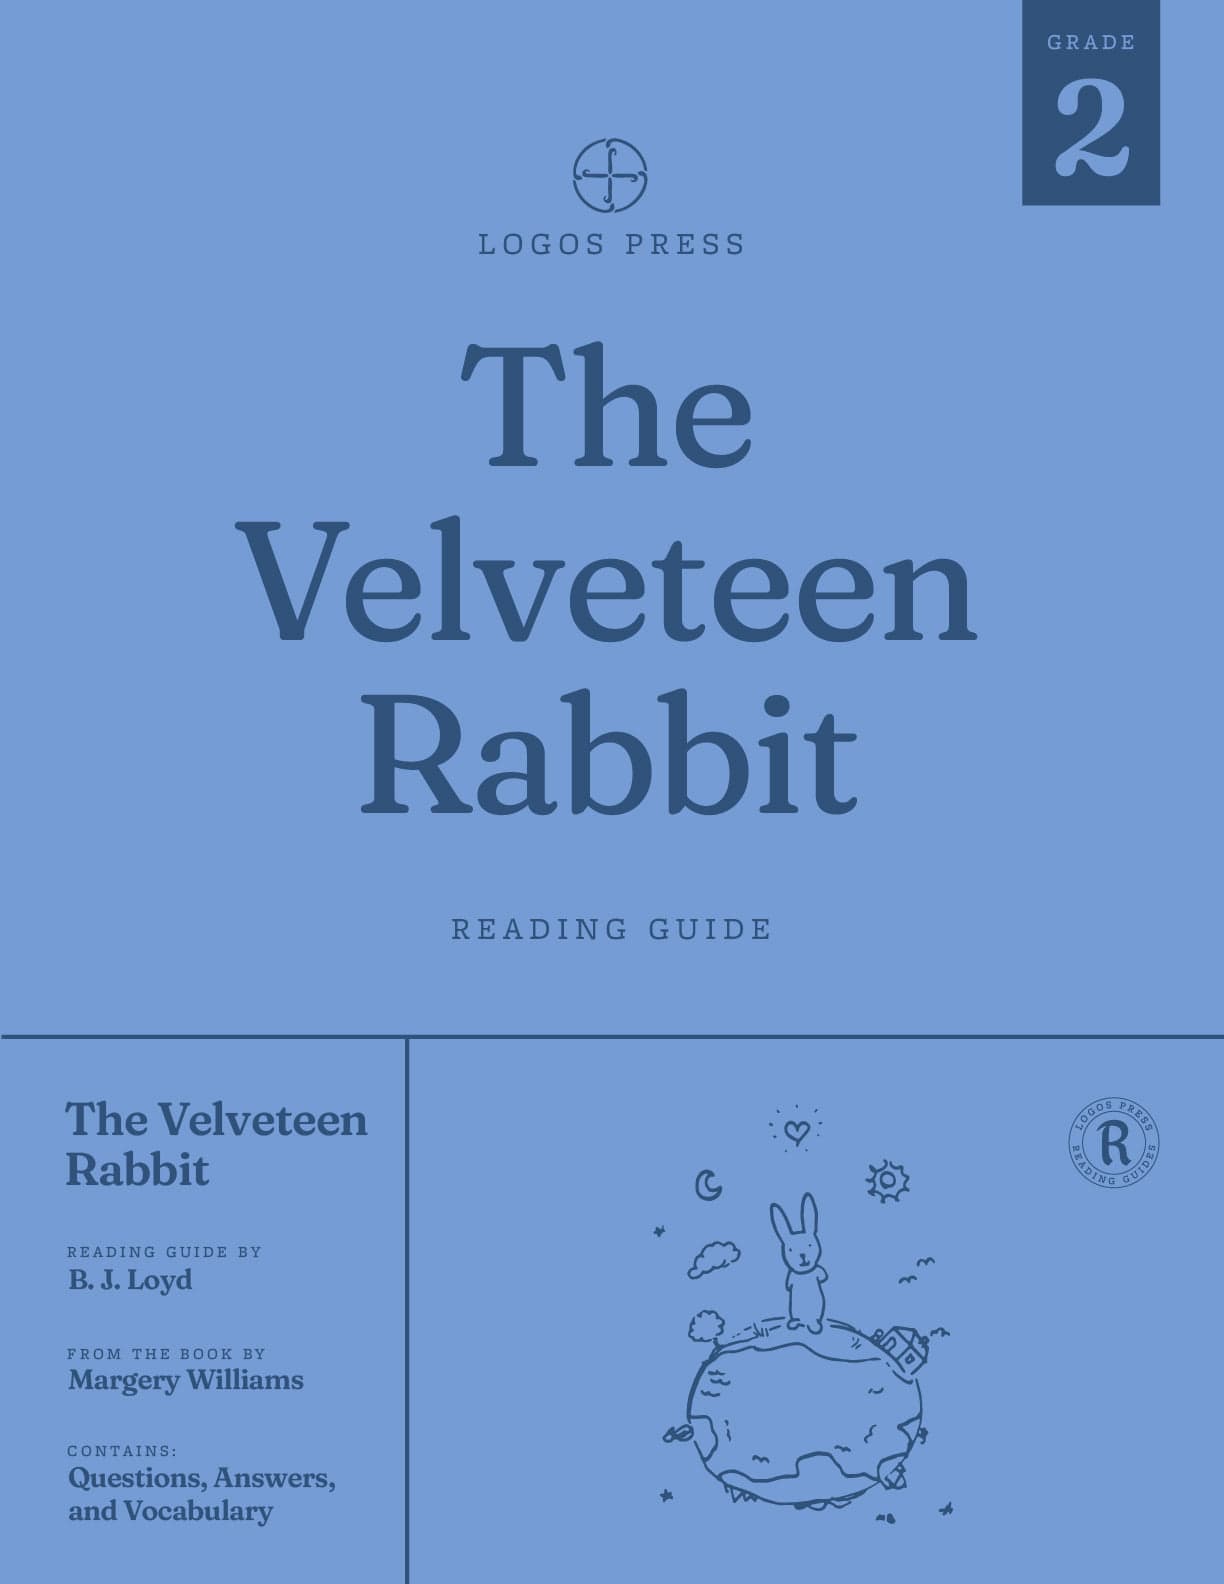 The Velveteen Rabbit - Reading Guide (Download)